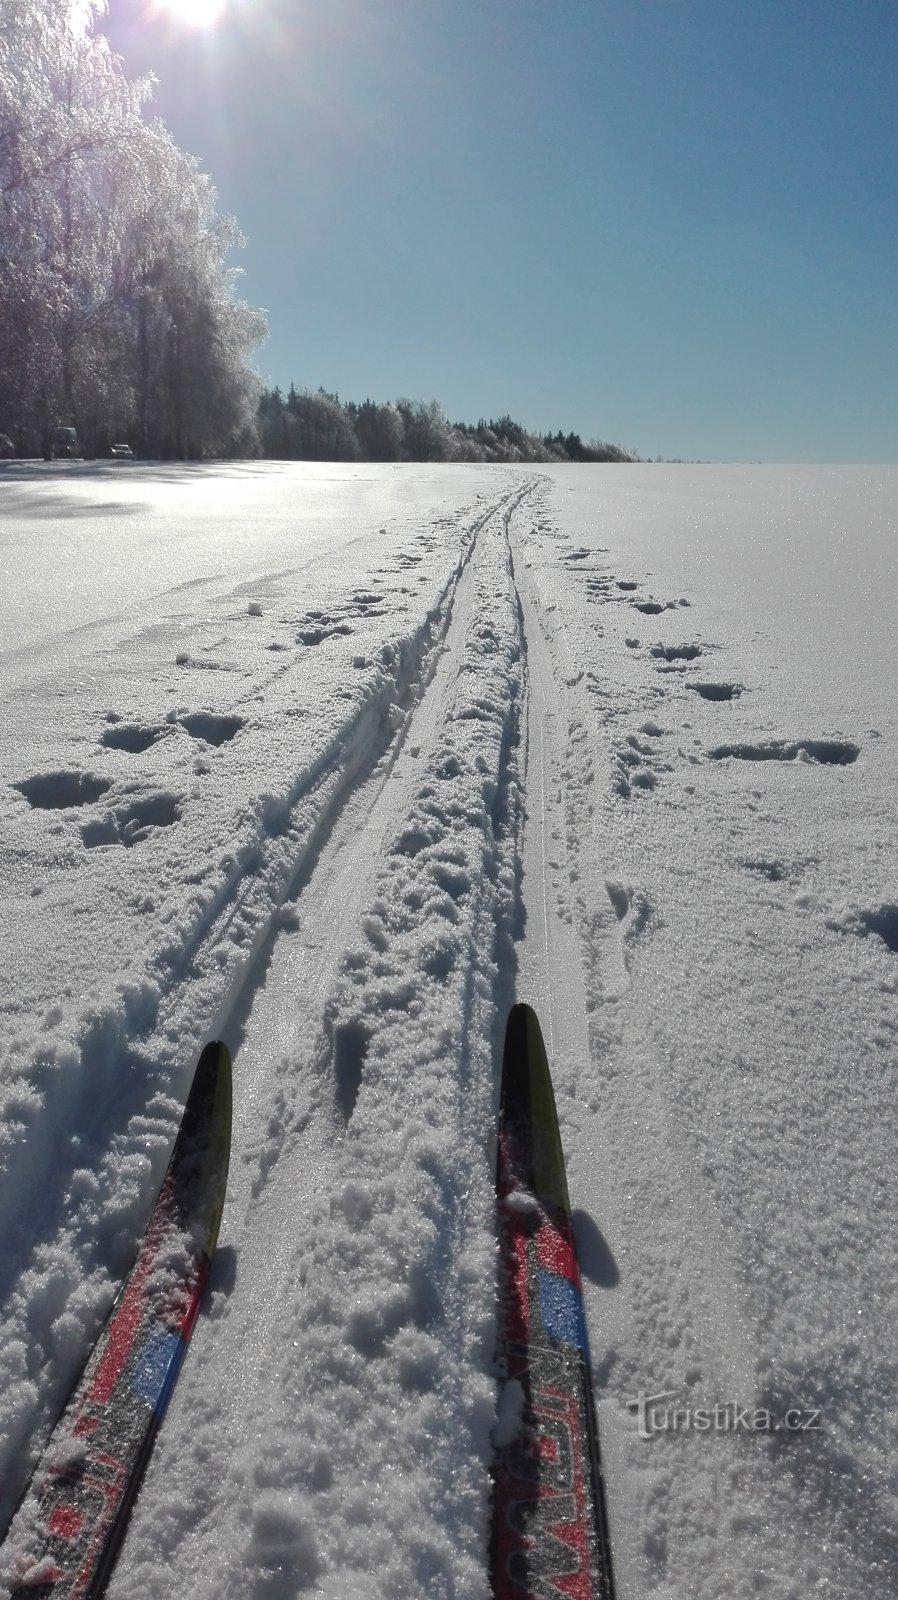 Winter Highlands på längdskidor - längdskidbana vid Rozkoša.